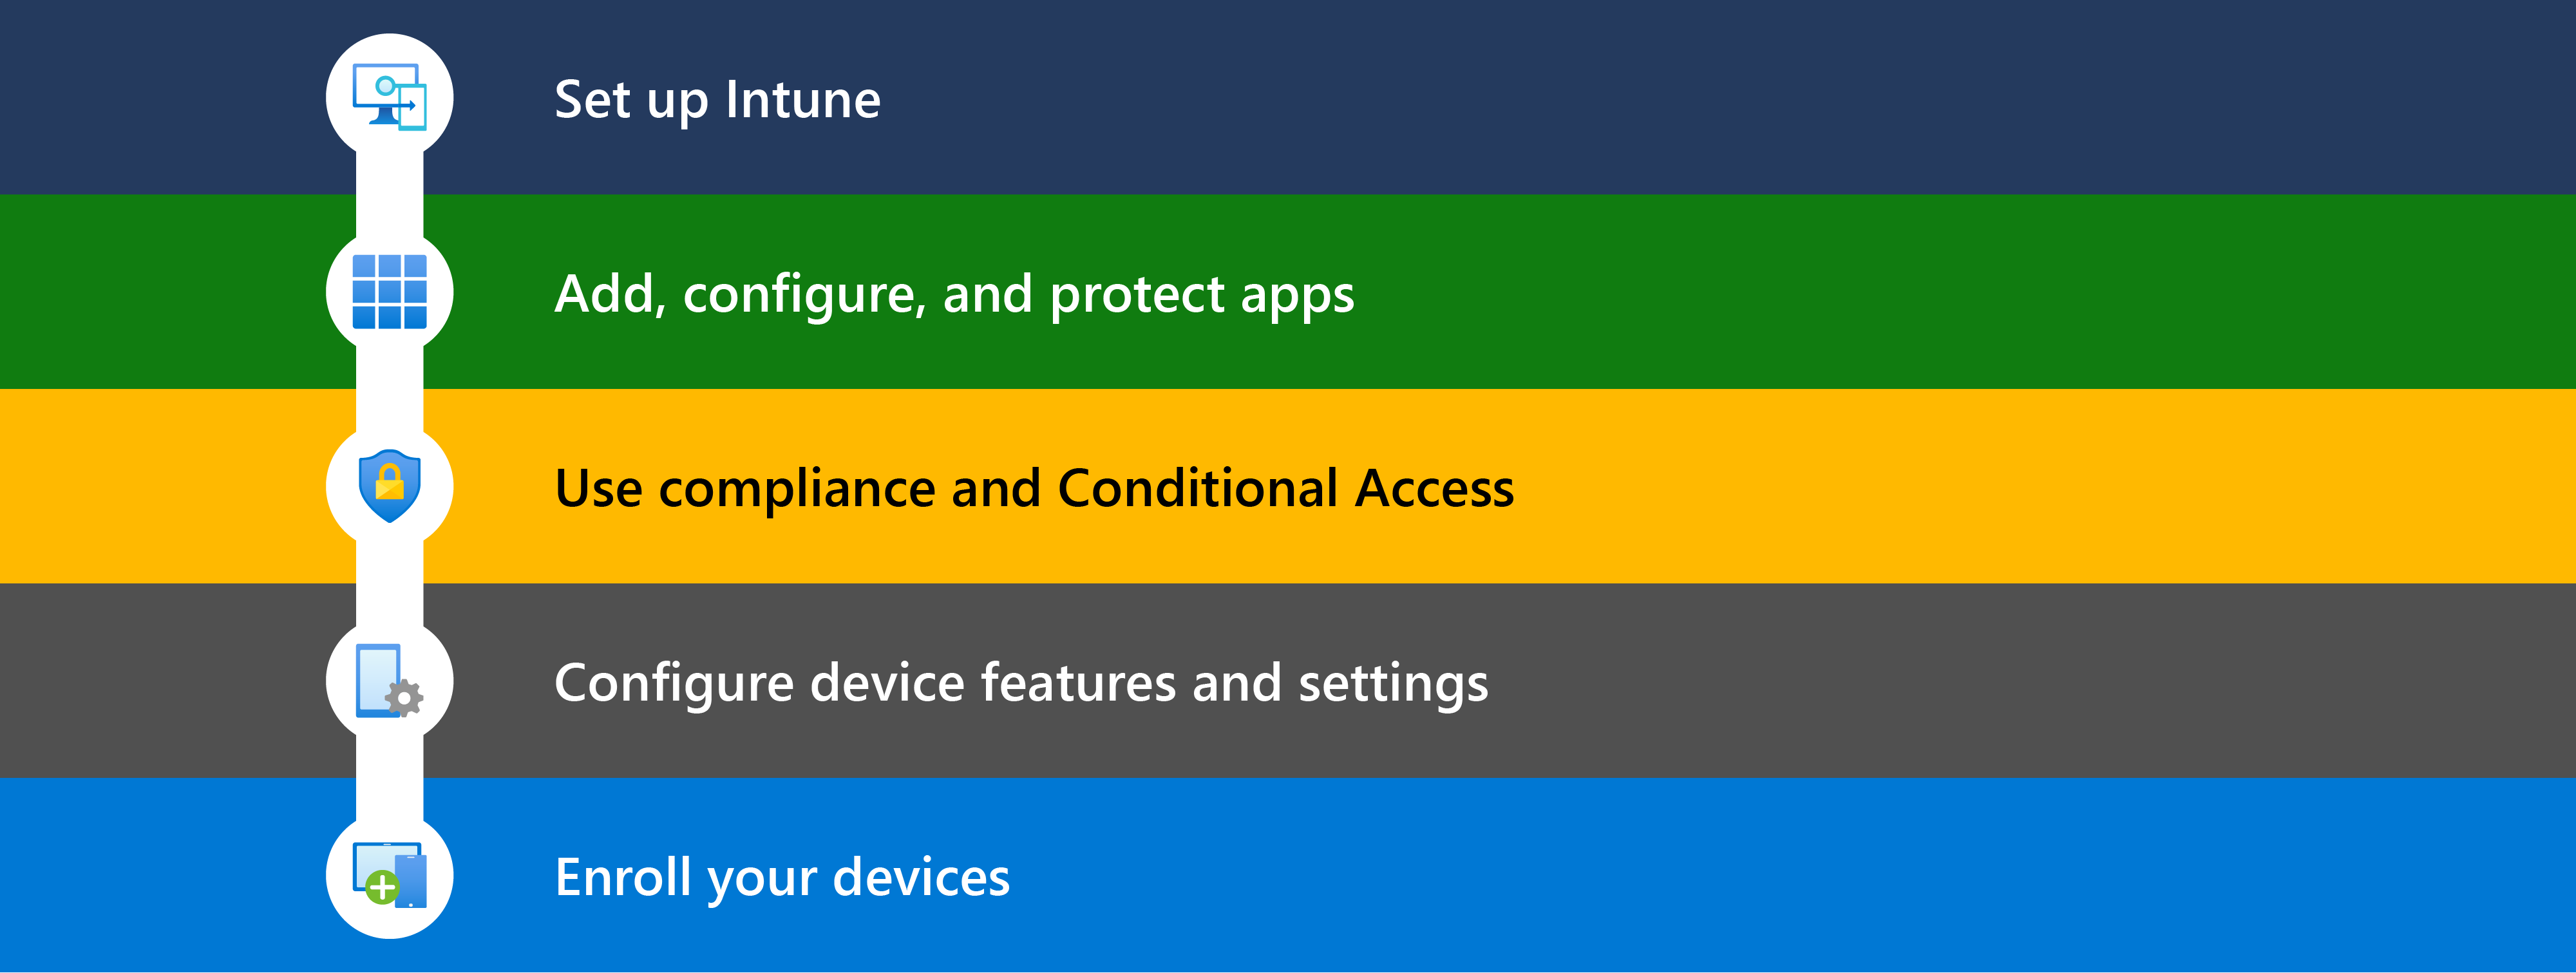 На схеме показаны различные шаги по началу работы с Microsoft Intune, включая настройку, добавление приложений, использование условного доступа & соответствия требованиям, настройку функций устройств, а затем регистрацию управляемых устройств.